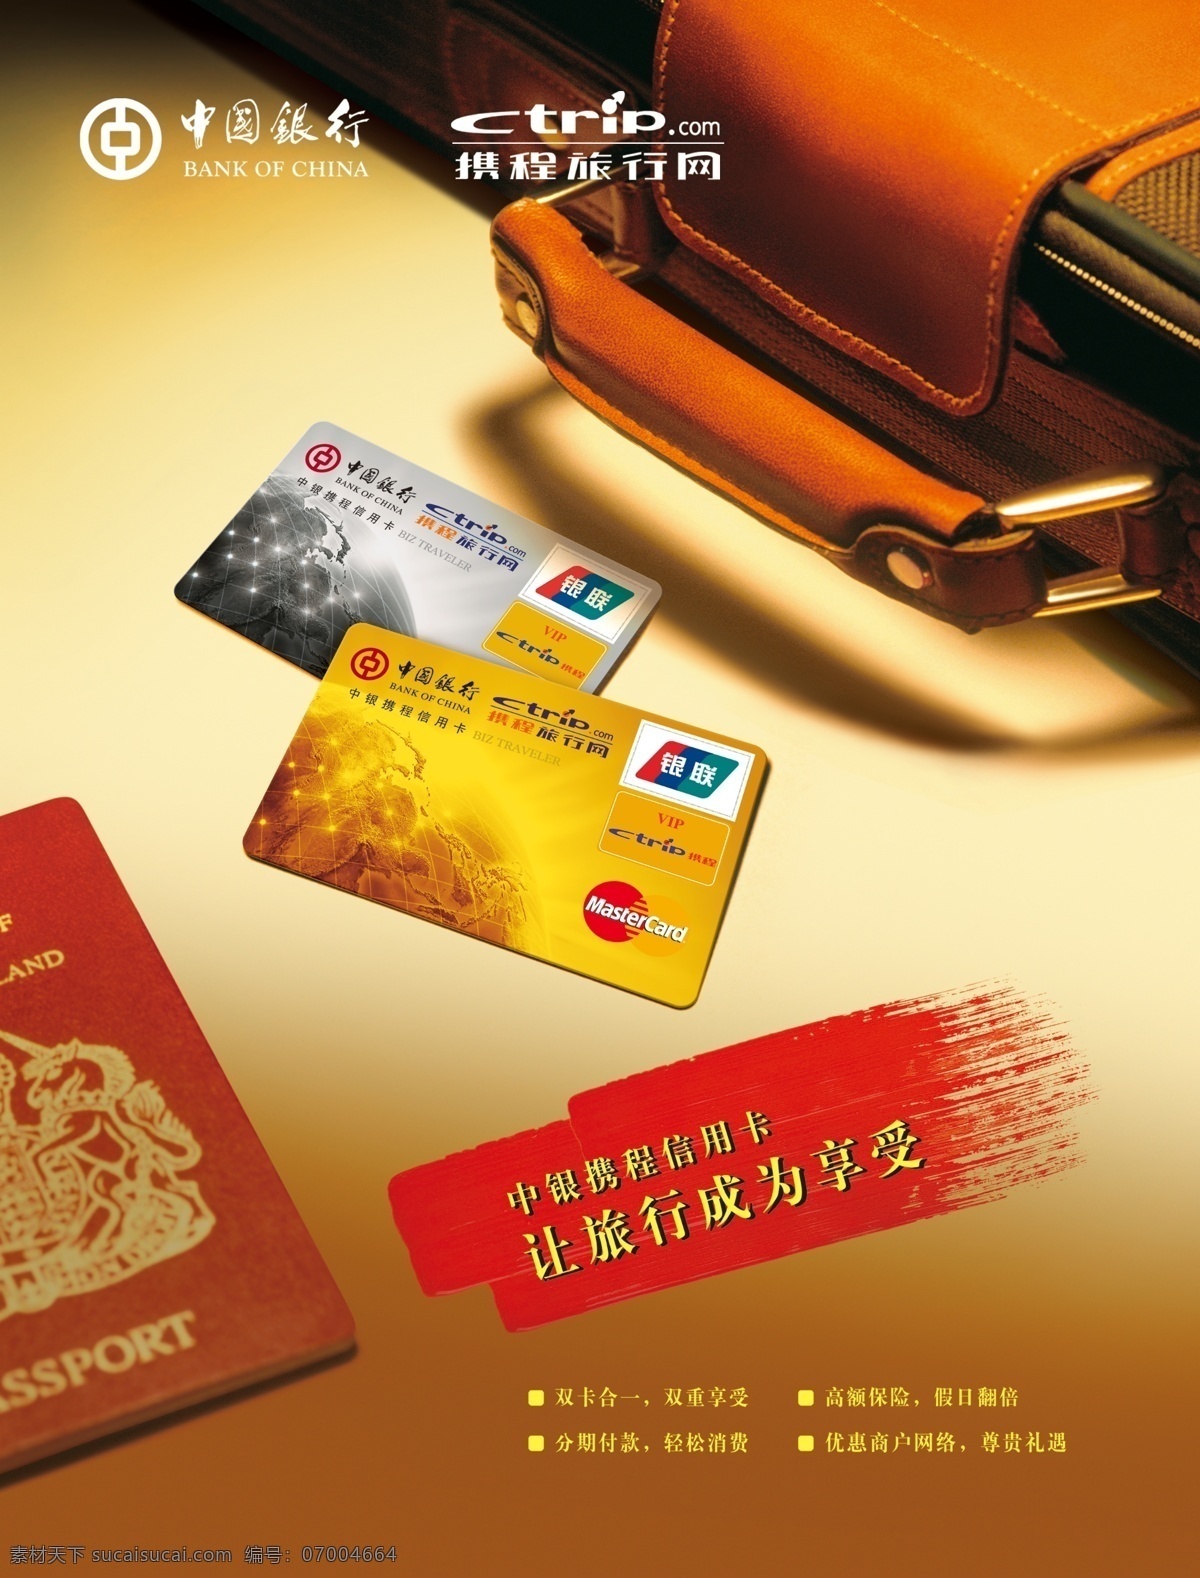 中行 携程 旅游 海报 携程网 宣传 广告 银行卡 银联 卡 中国银行 中银 信用卡 广告设计模板 源文件